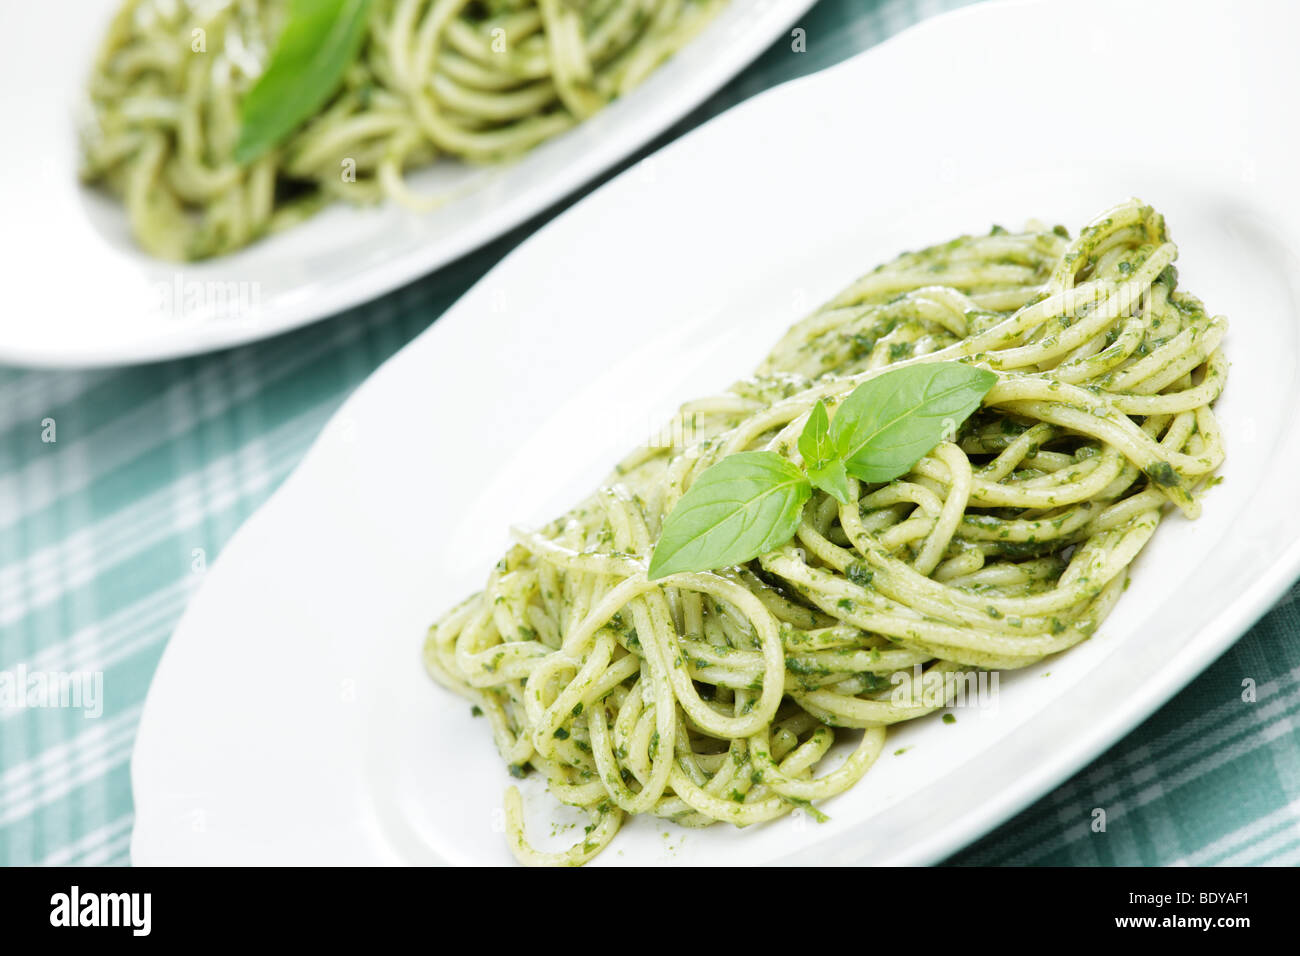 Spaghetti with pesto sauce and basil leaf Stock Photo